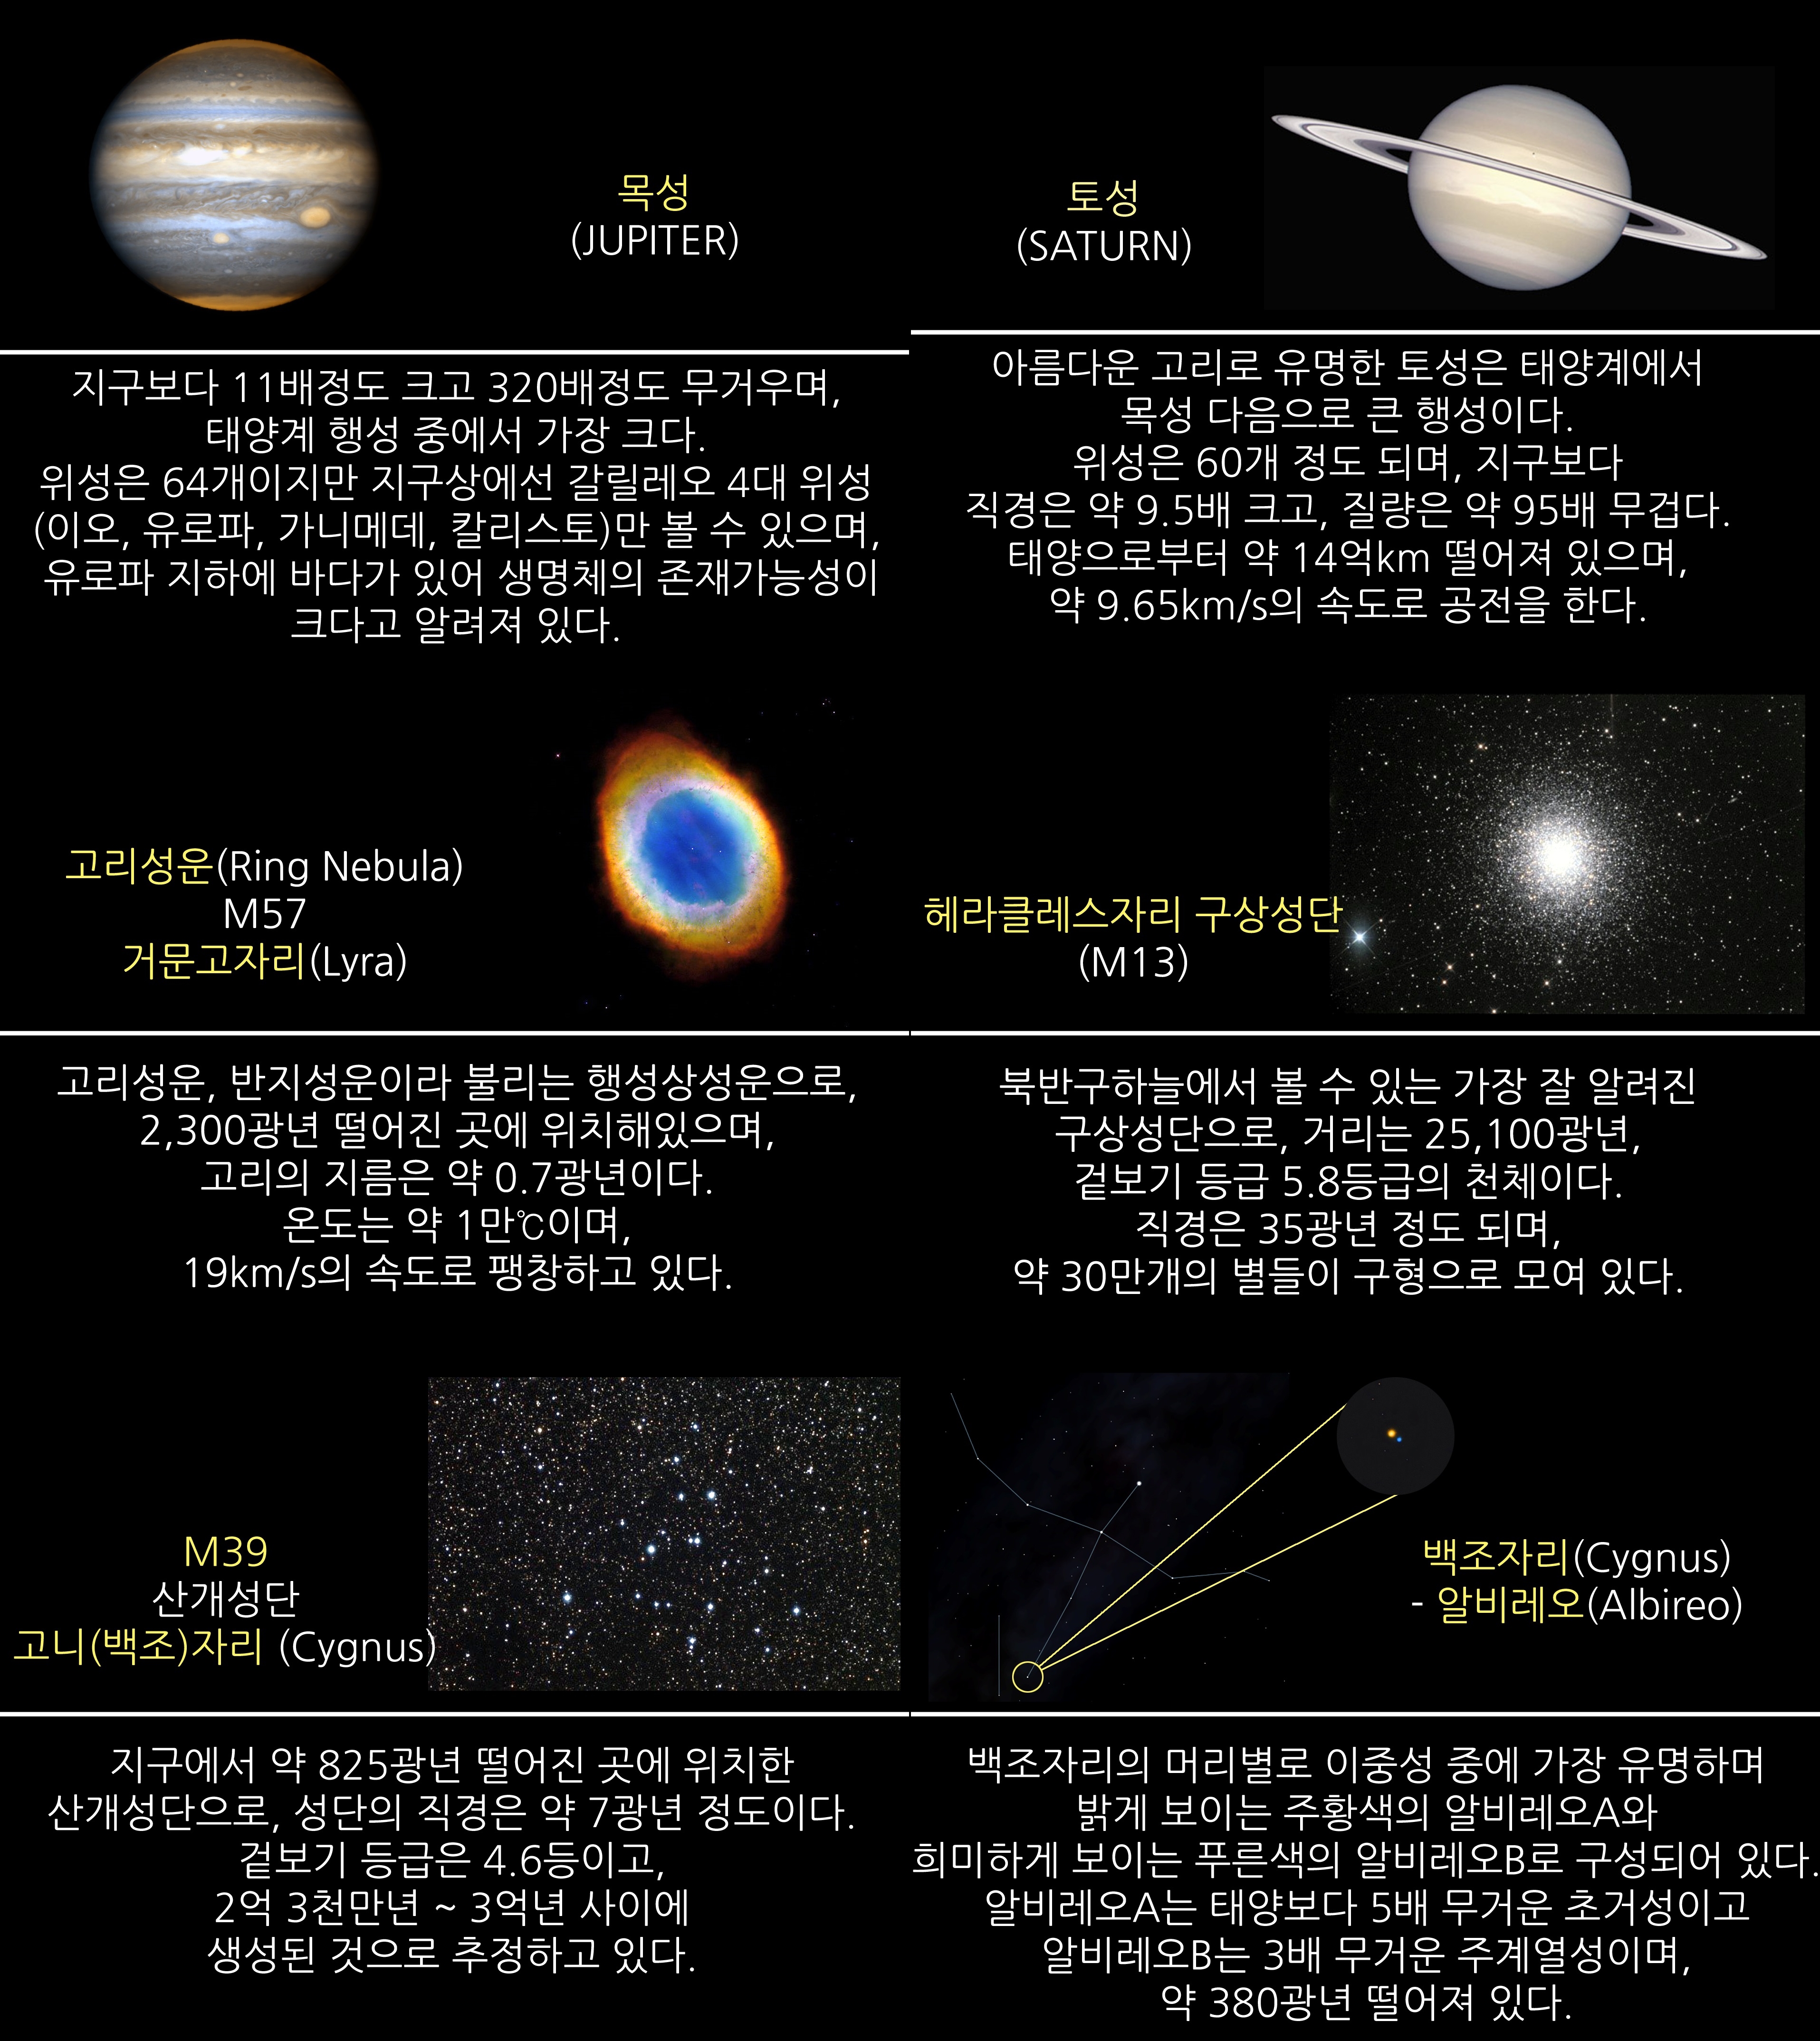 2019년 8월 주요 천체관측 대상